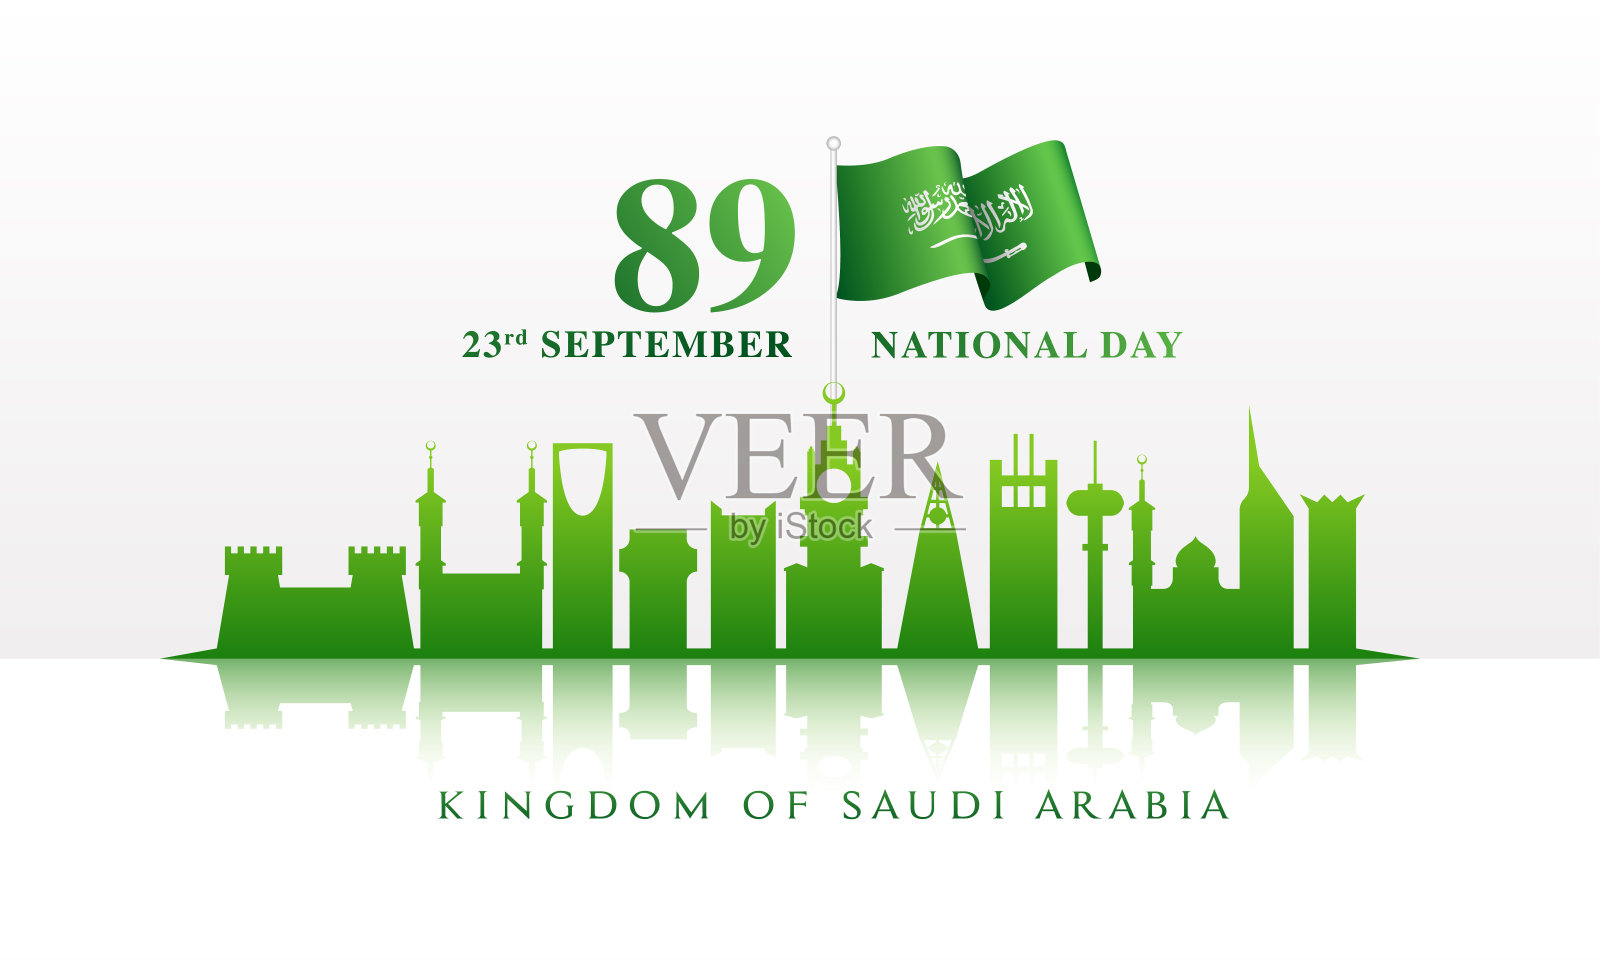 沙特国庆日爱国卡 向量例证. 插画 包括有 阿拉伯, 向量, 看板卡, 王国, 可耕的, 活动, 愉快 - 227234076